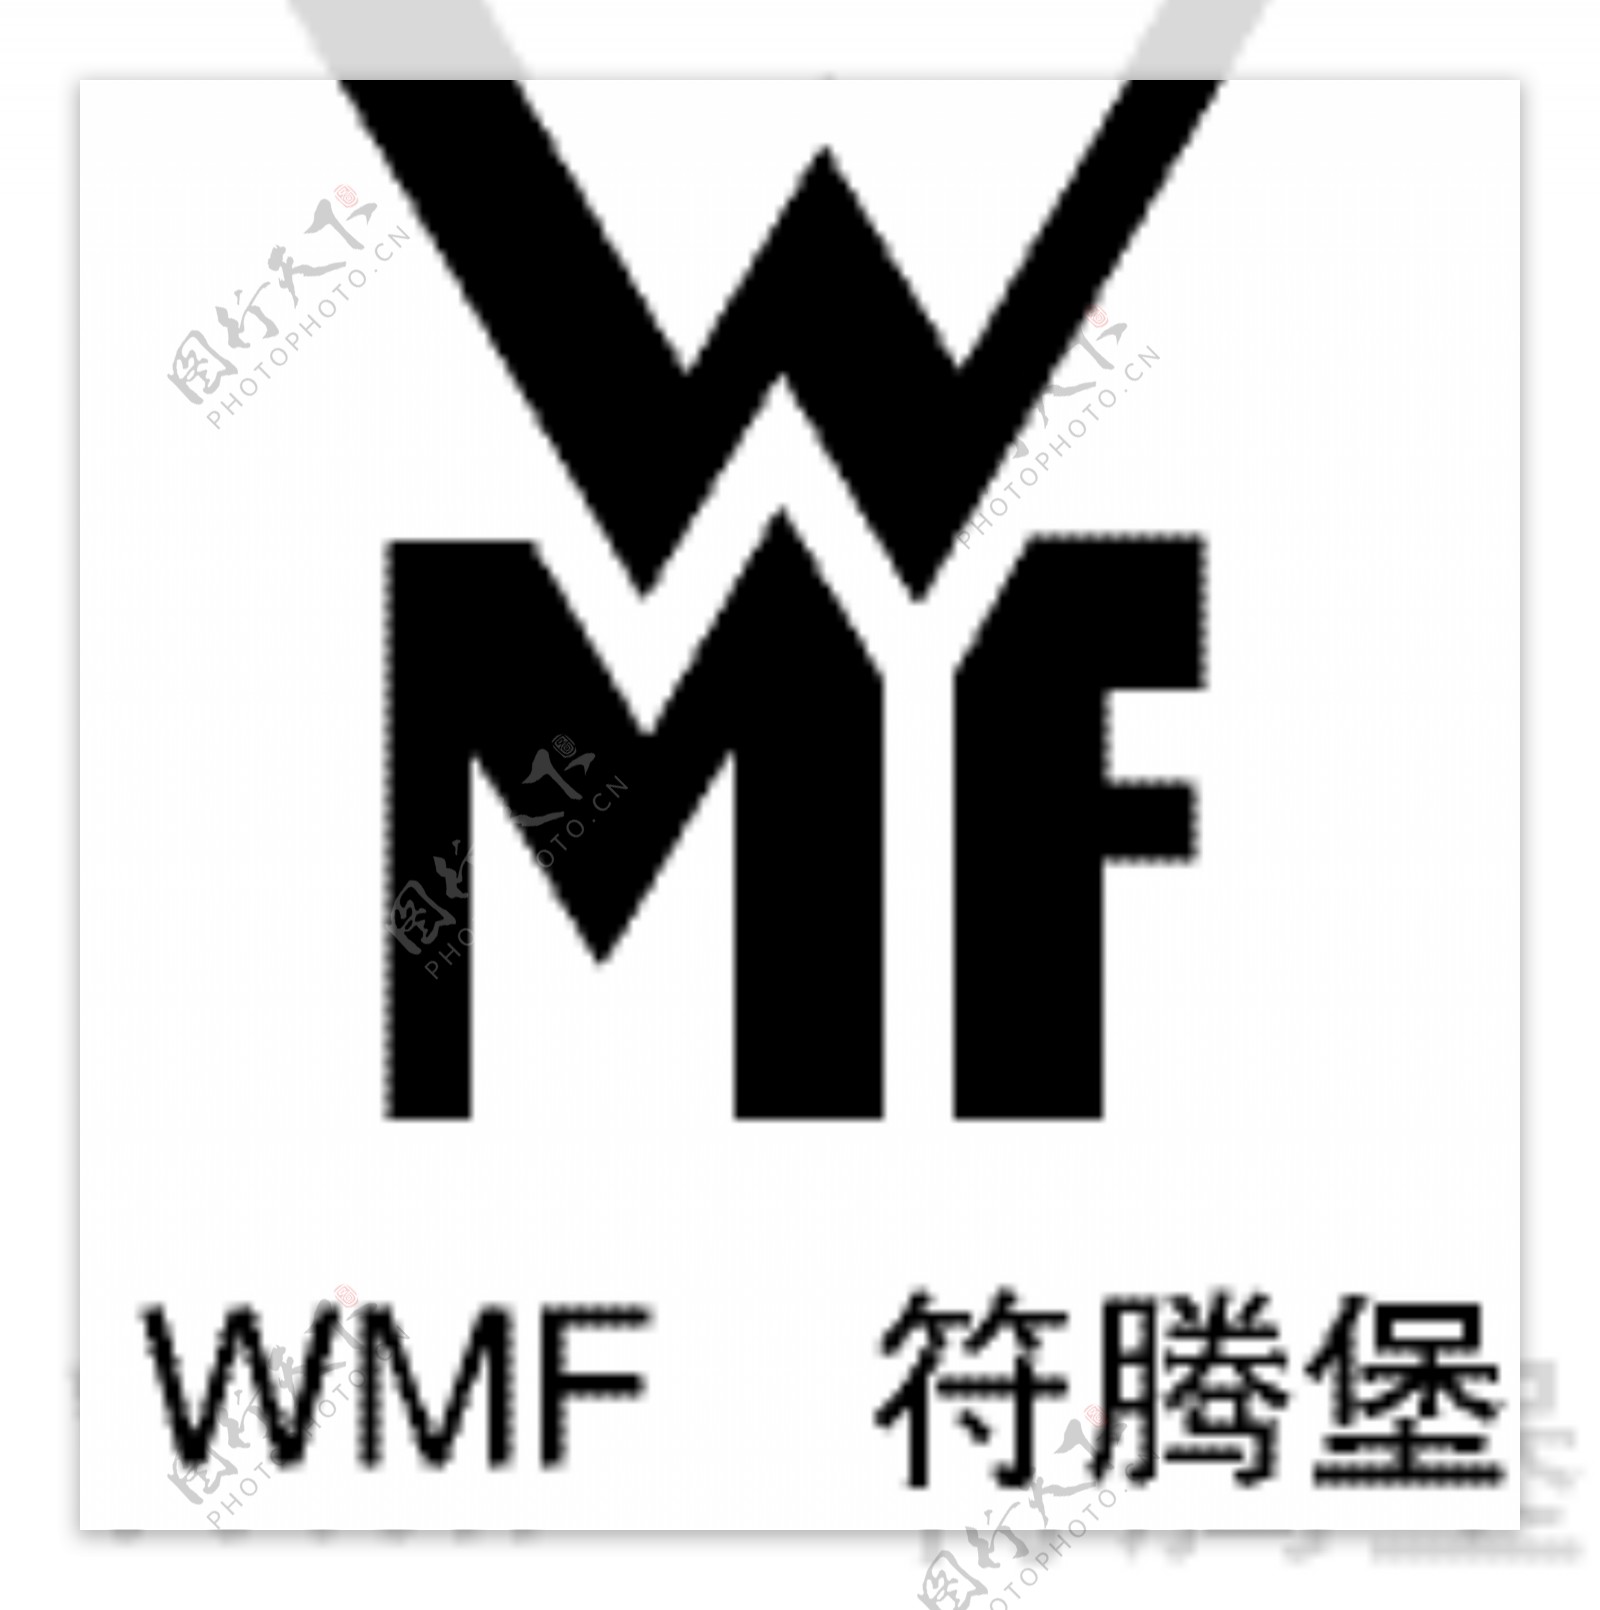 wmf符腾堡logo图片